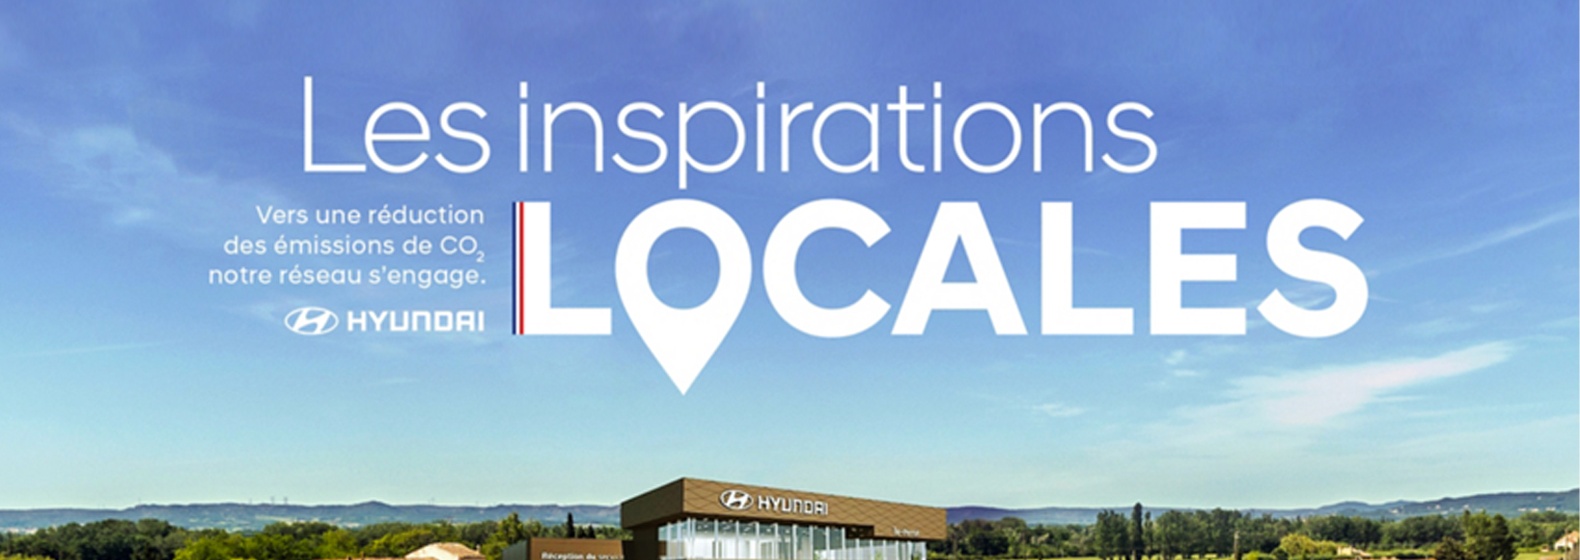 inspiration_locales_header_v2.jpg